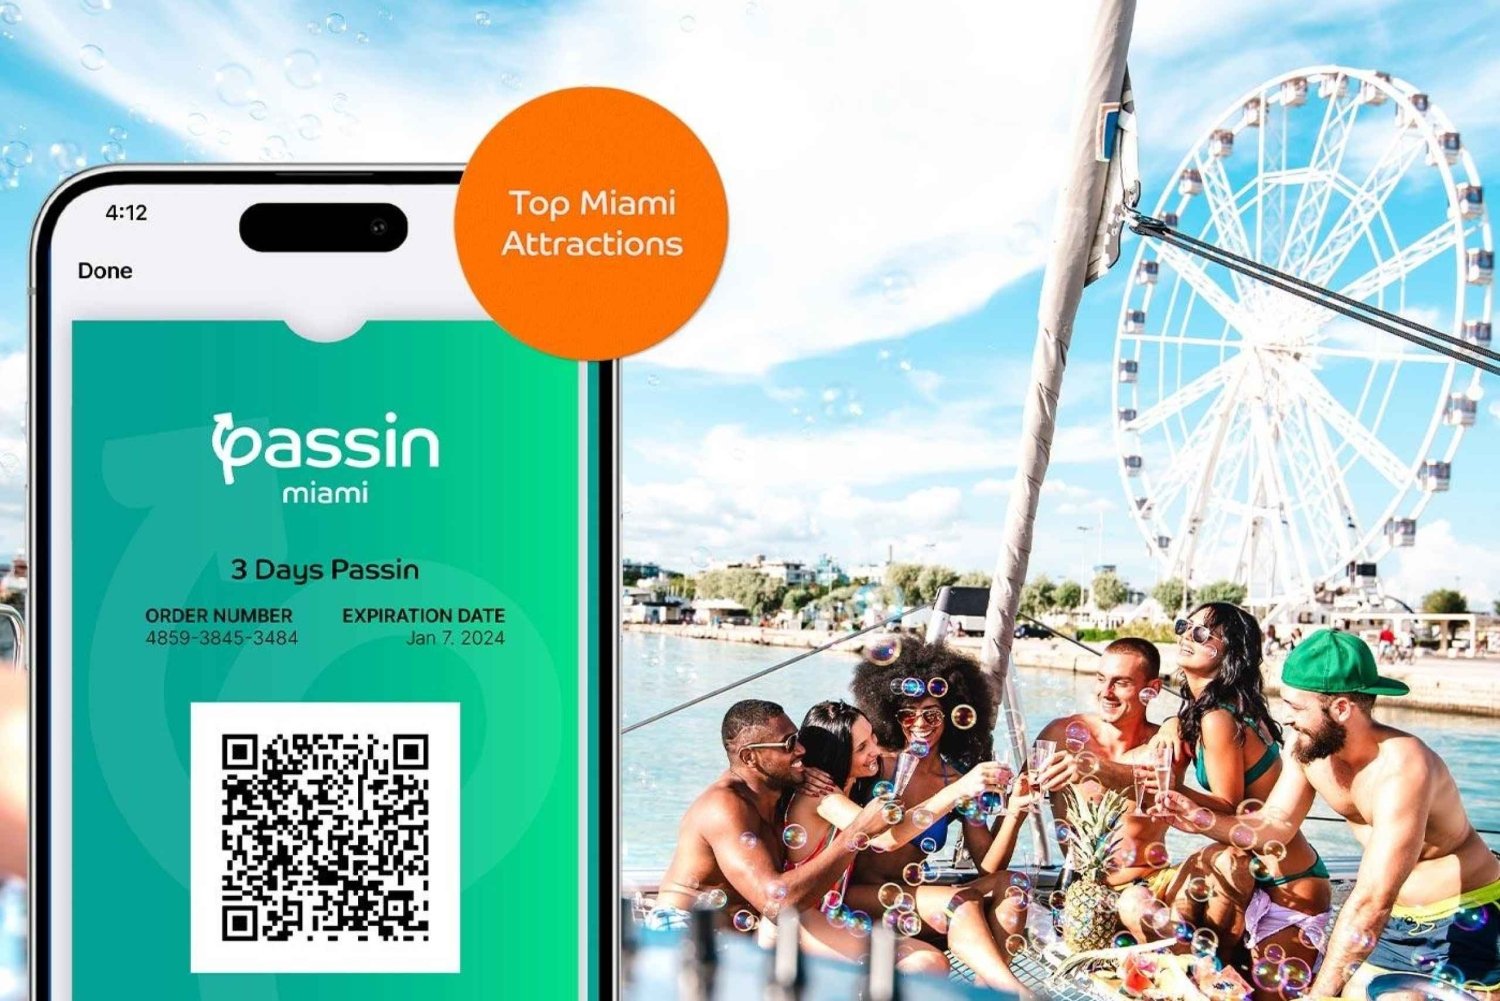 Passin Miami - Miami Pass med alt inkludert m/ flyplasstransport